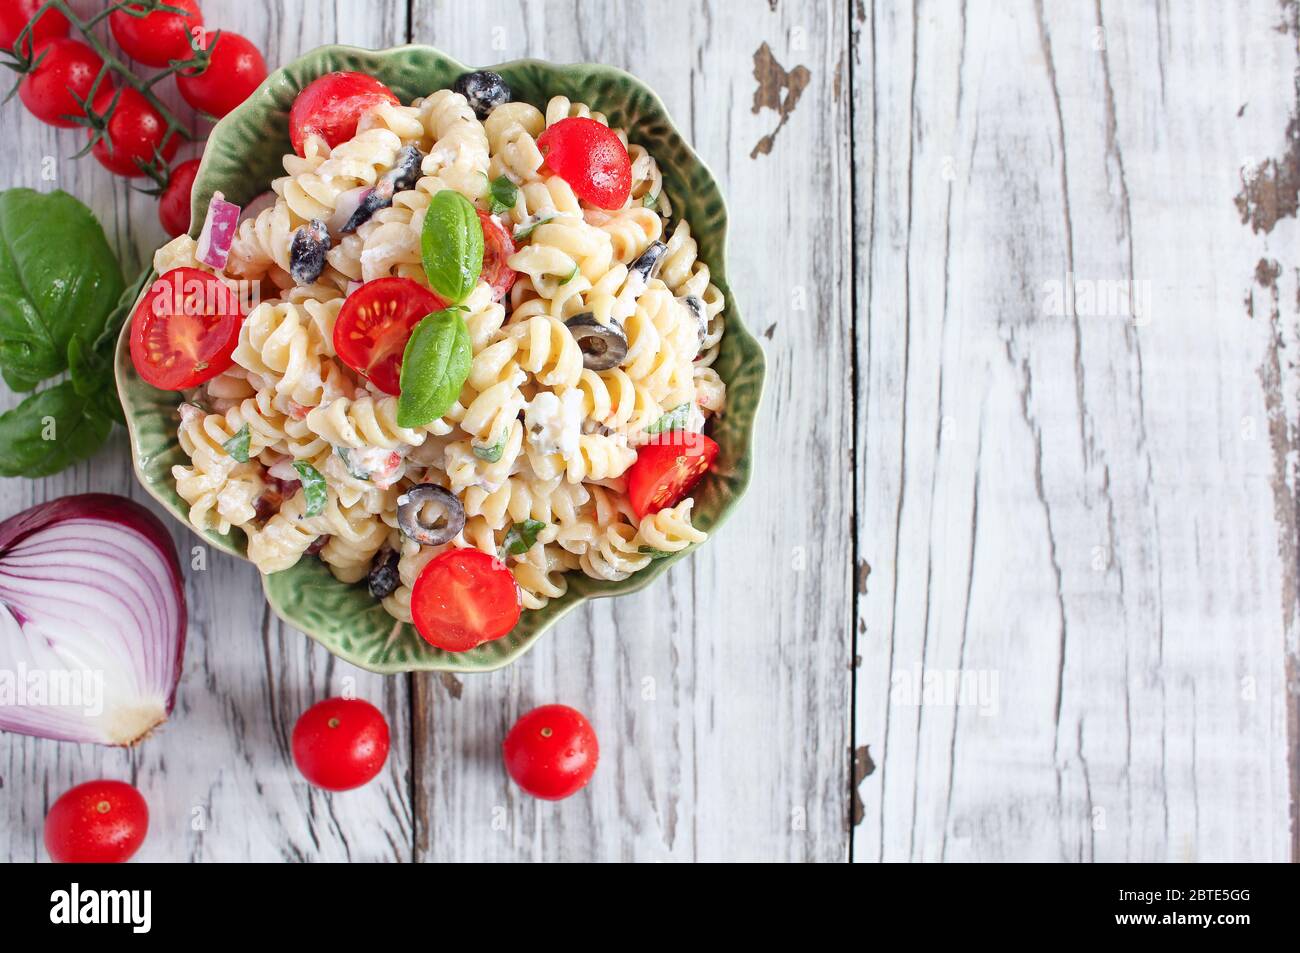 Von oben gesehen: Pasta-Salat mit frisch gehacktem Basilikum, Tomaten, schwarzen Oliven, roten Zwiebeln und Feta-Käse, mit einem italienischen Öldressing. Stockfoto